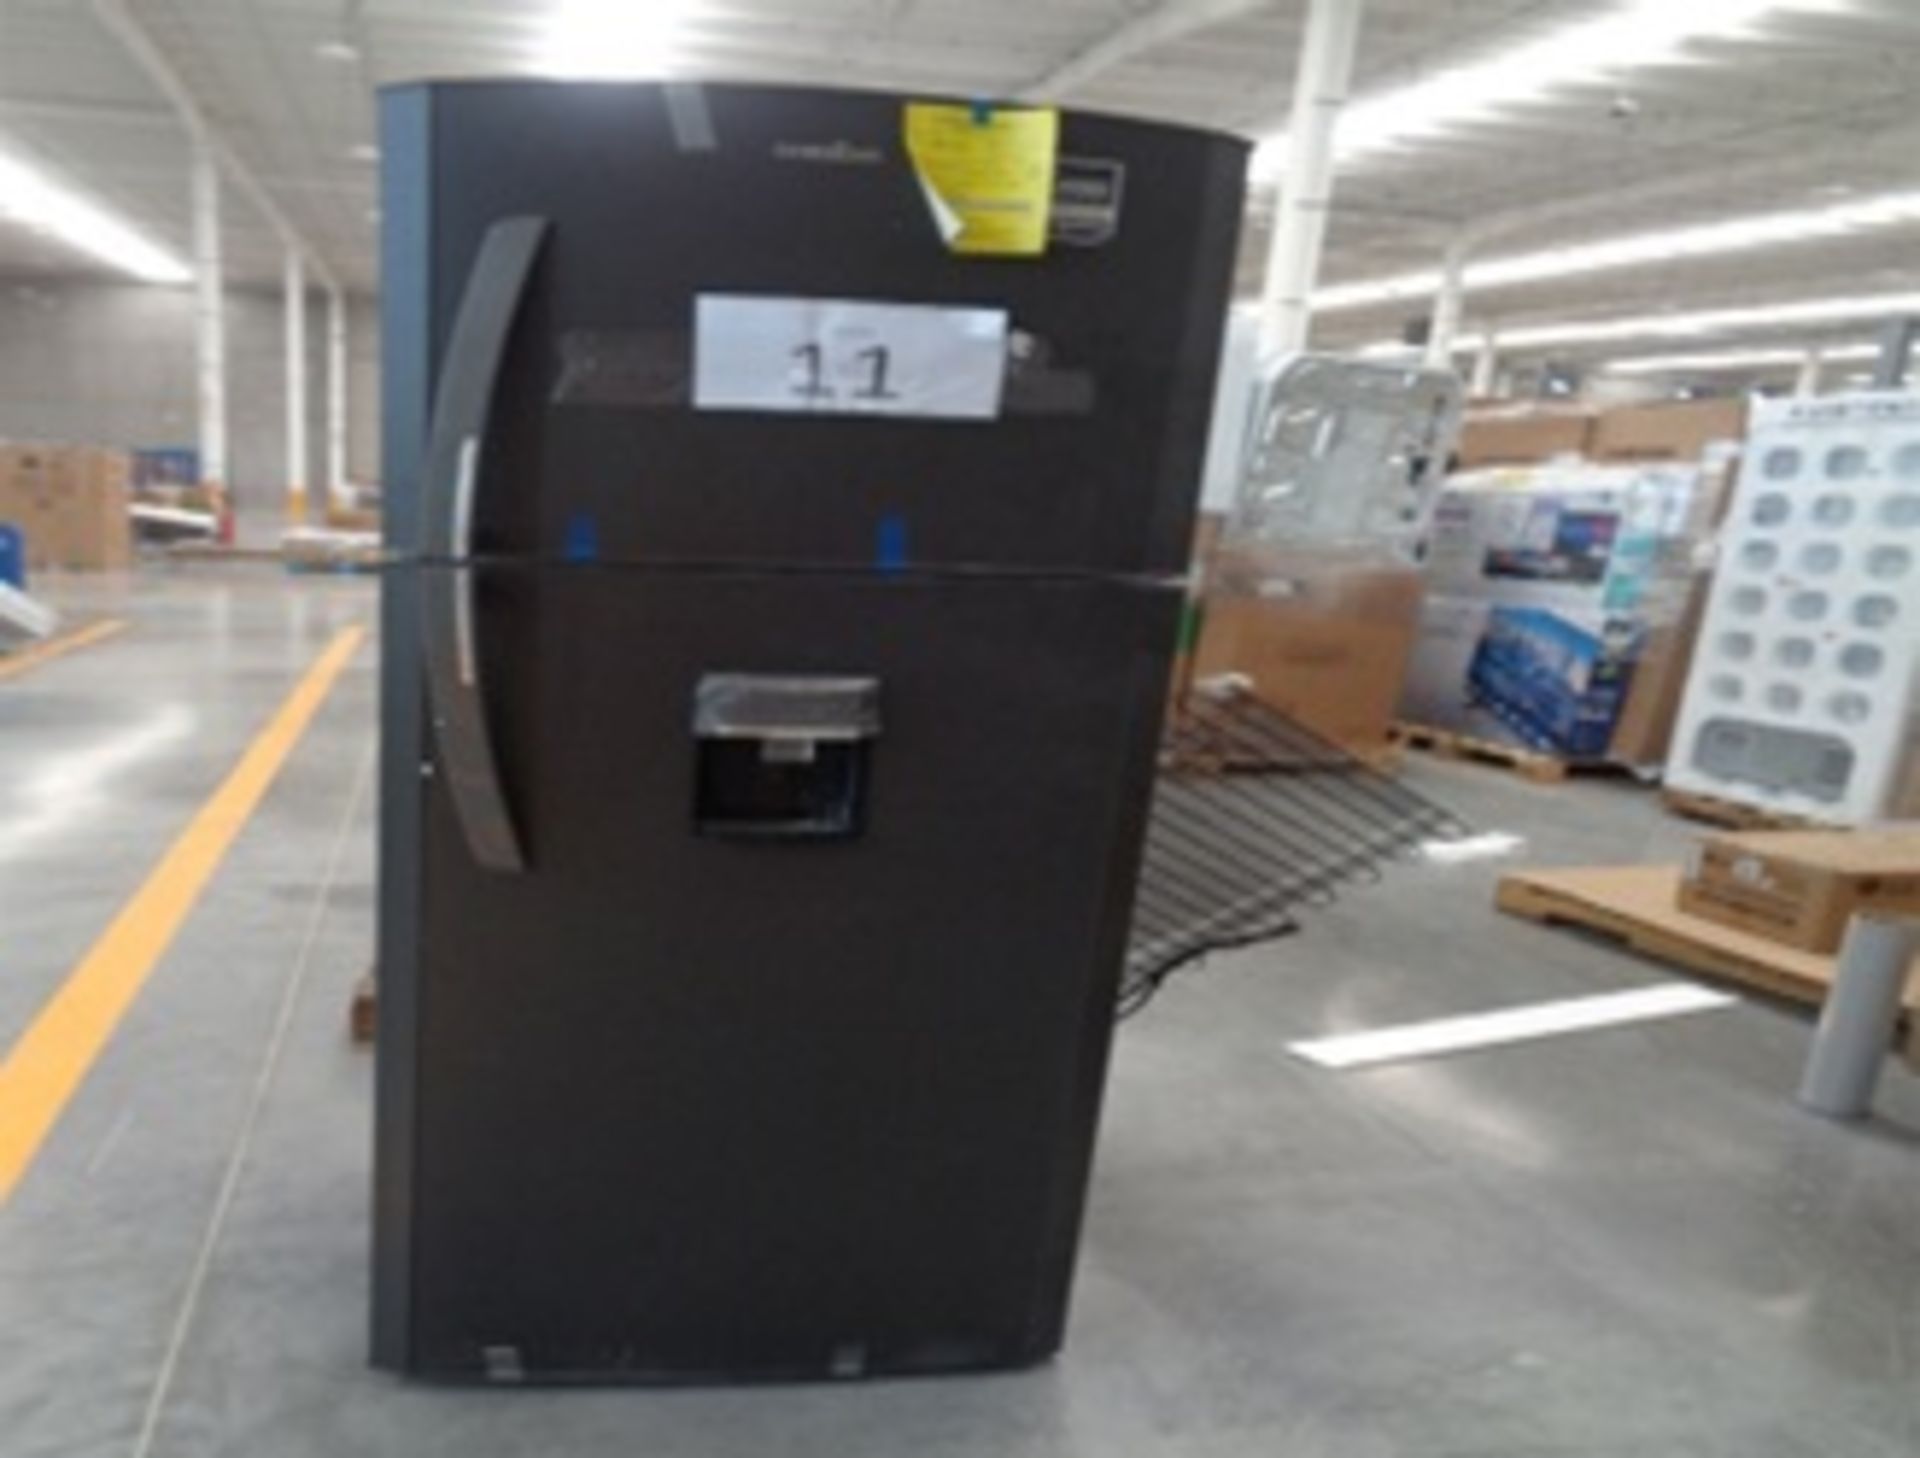 Lote de 2 Refrigeradores (Refrigerador 11 P Negro(No Enfria), Refrigerador Tmf 14 P (Articulo Usado